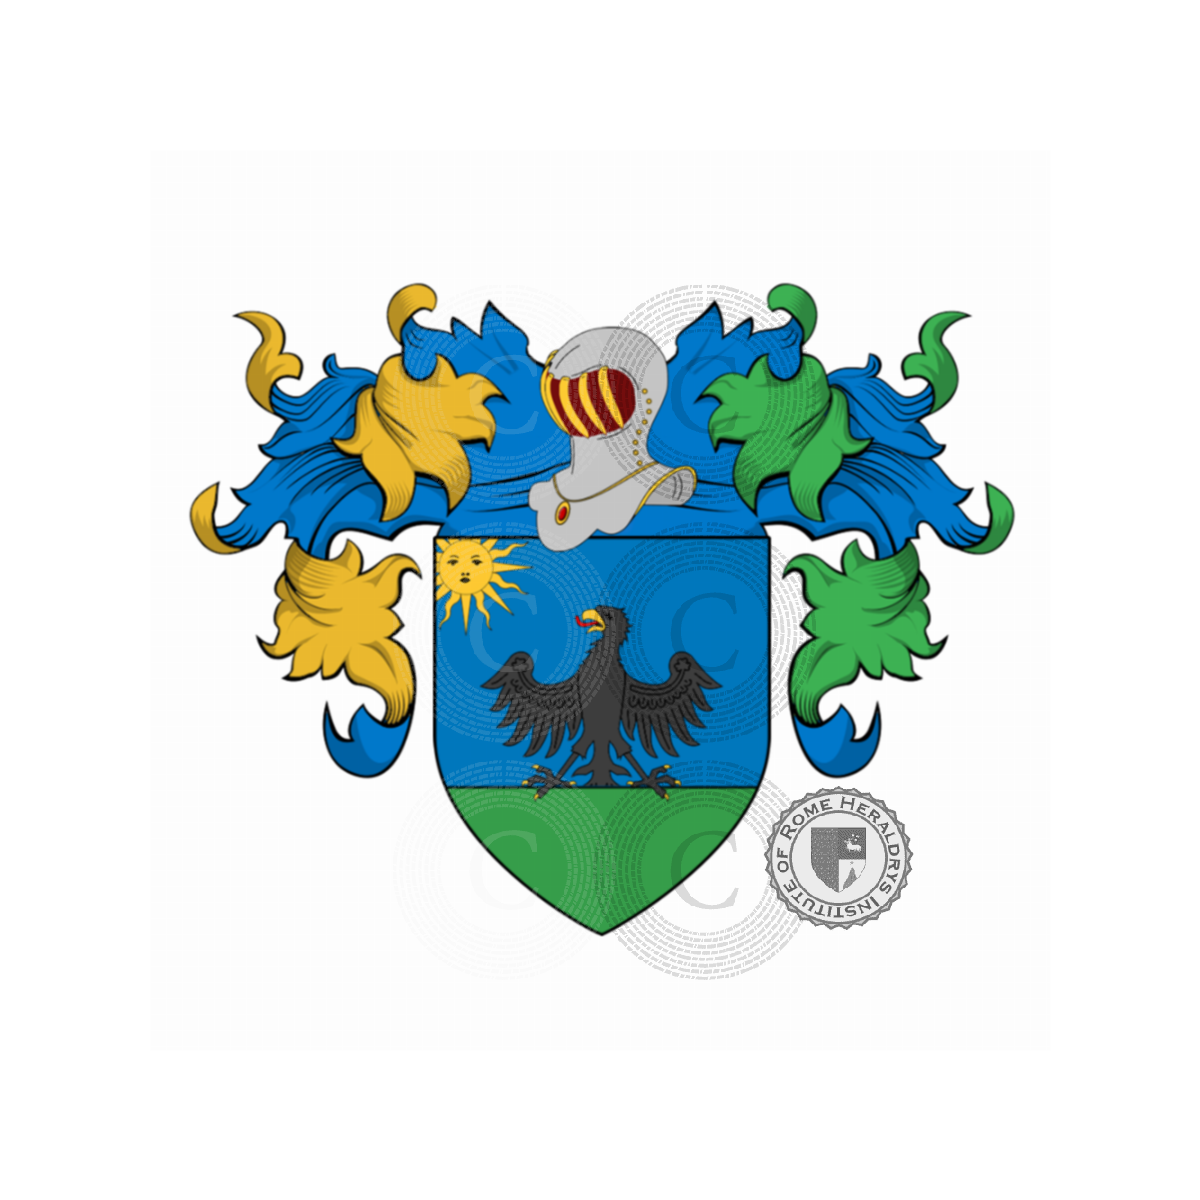 Coat of arms of familyVenturini, Venturin